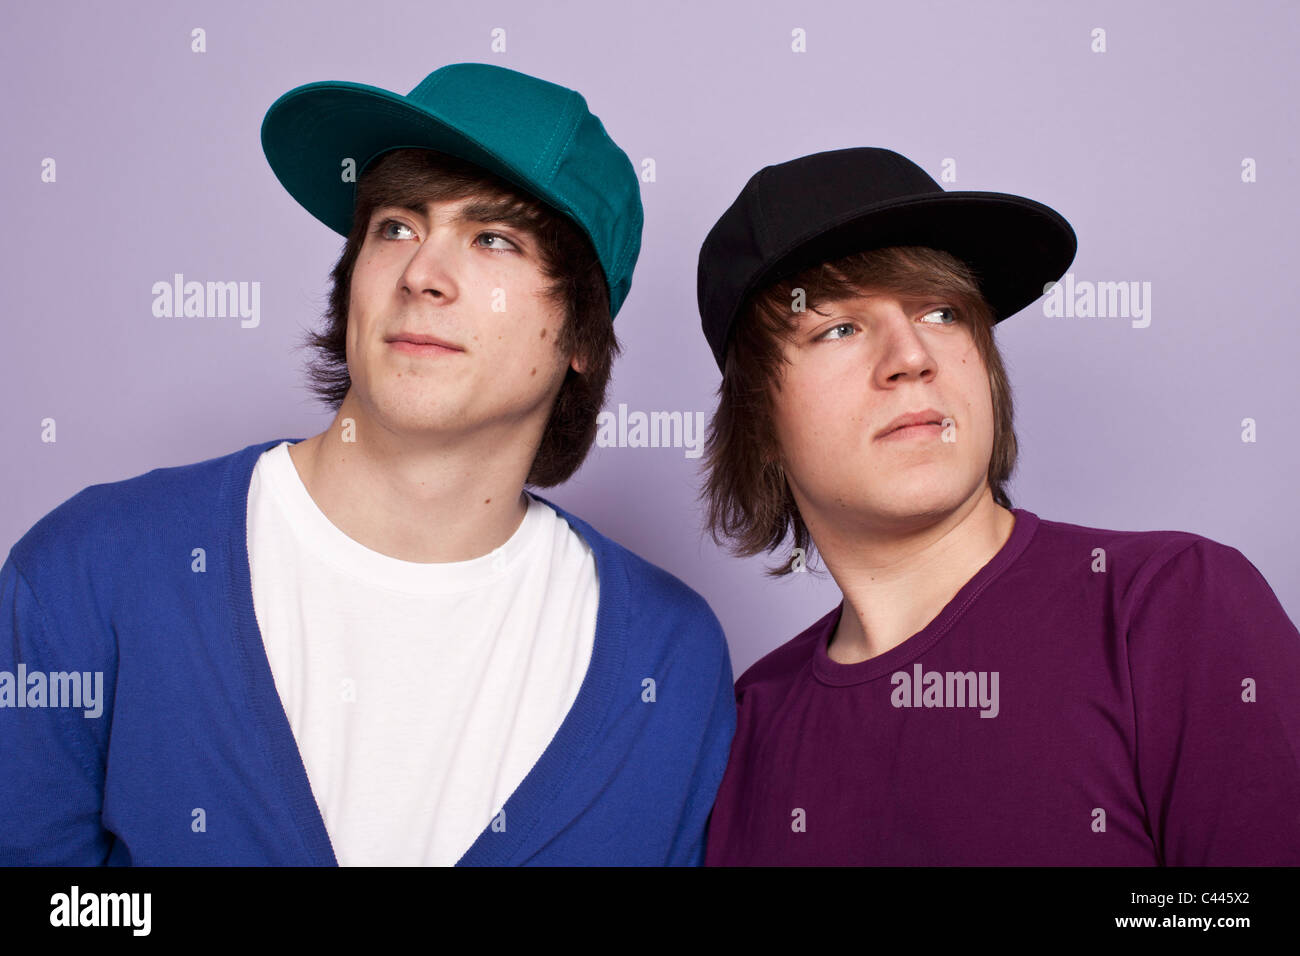 Two teenage boys wearing baseball caps looking away, studio shot Stock Photo